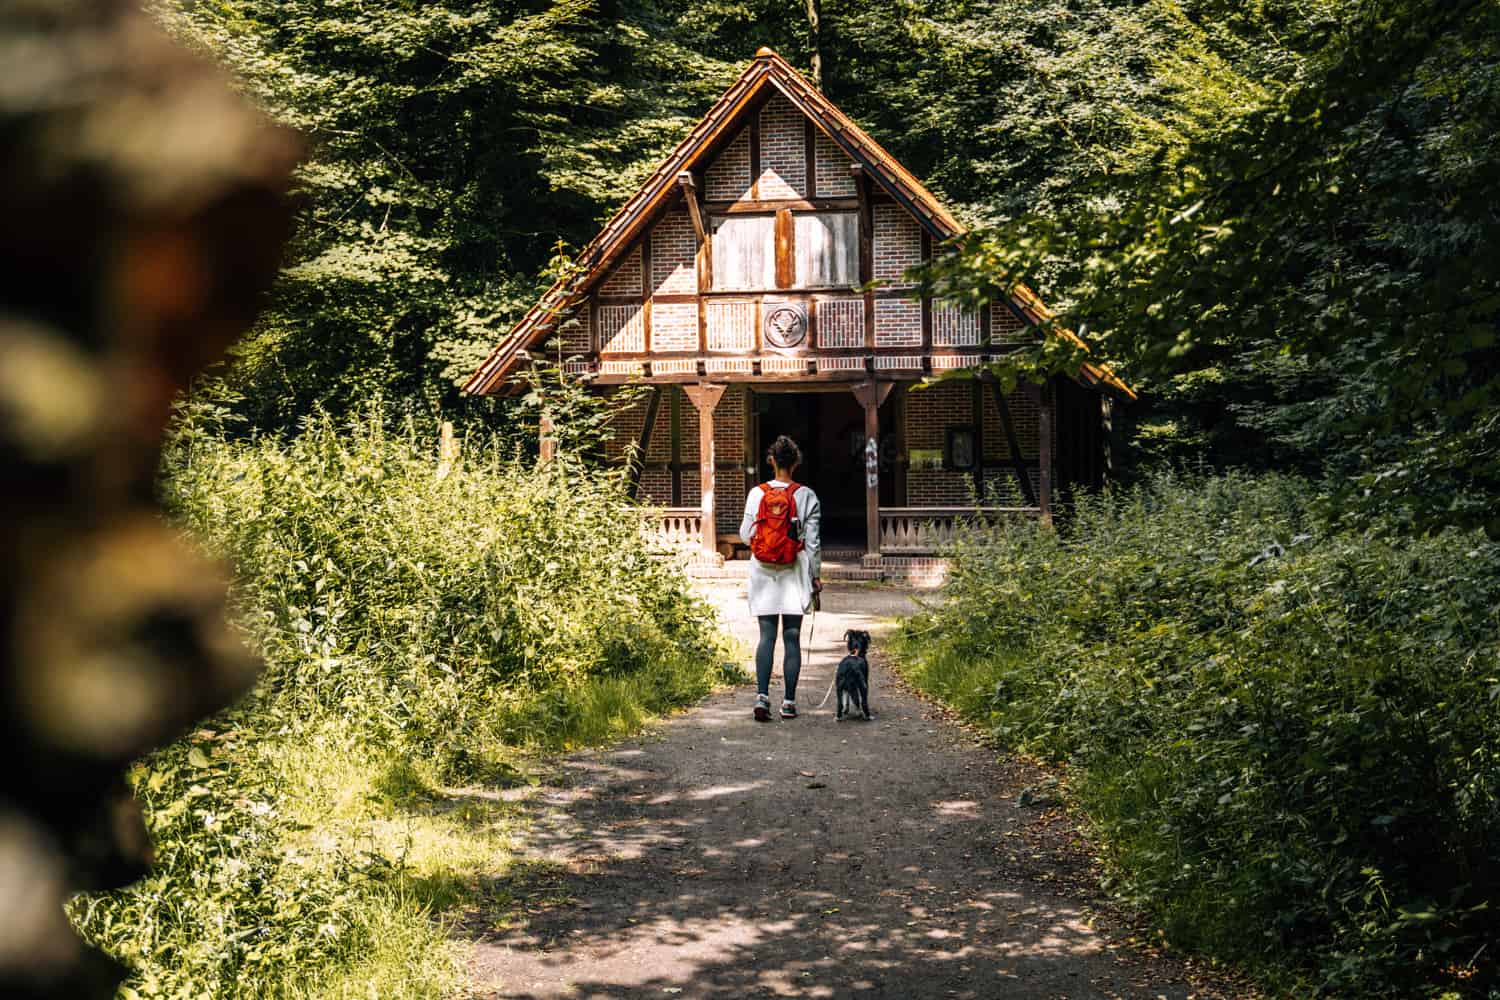 Urlaub mit Hund in Ostfriesland - Traum-Ferienwohnung, schönste Strände & Aktivitäten: Forsthaus Gödens